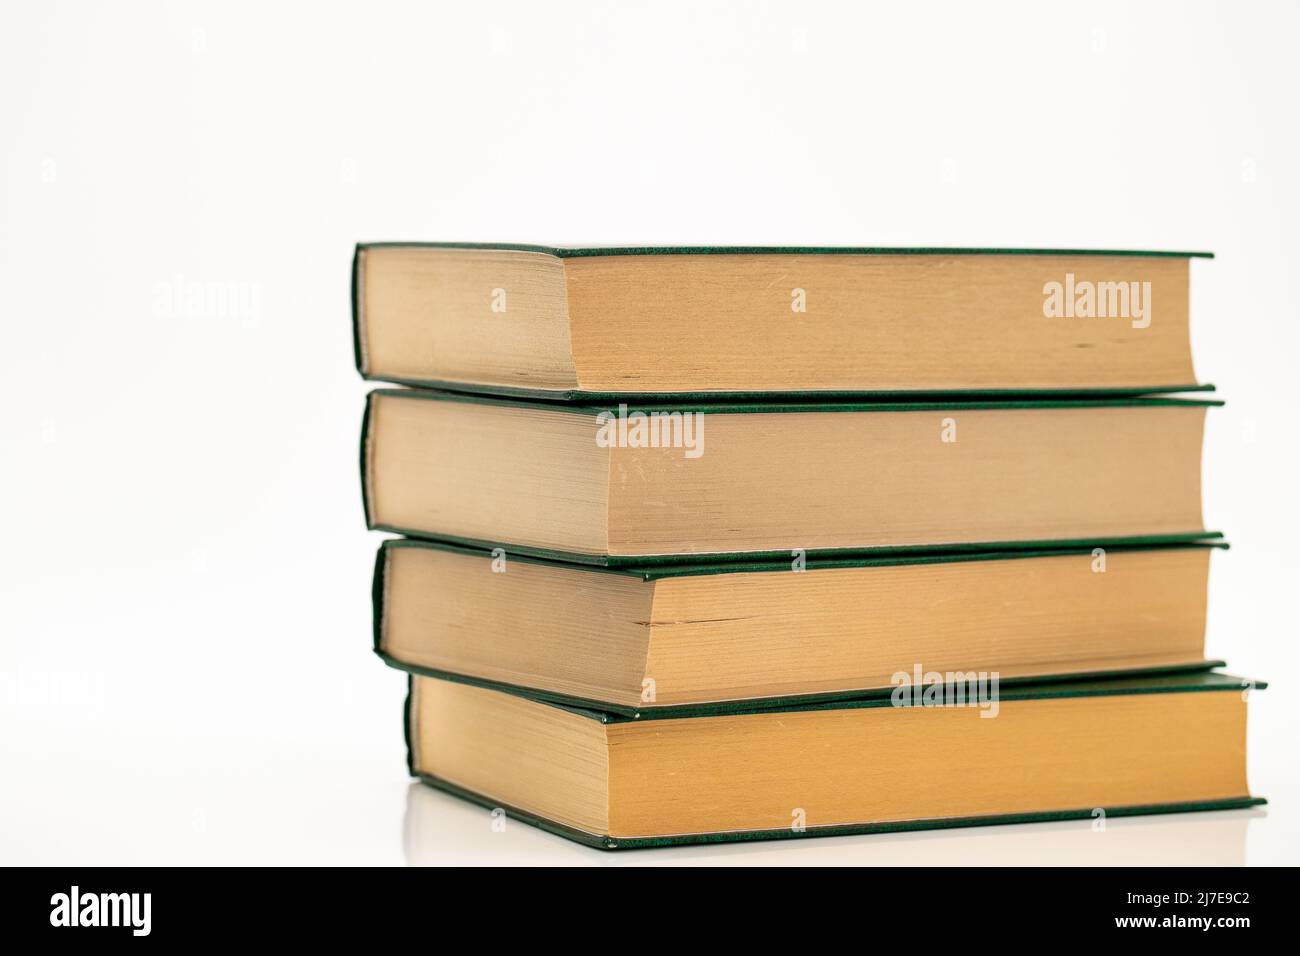 Libri con copertine verdi su sfondo bianco.lettura di libri. Conoscenza Concept.Reading ed educazione. Letteratura e lettura Foto Stock